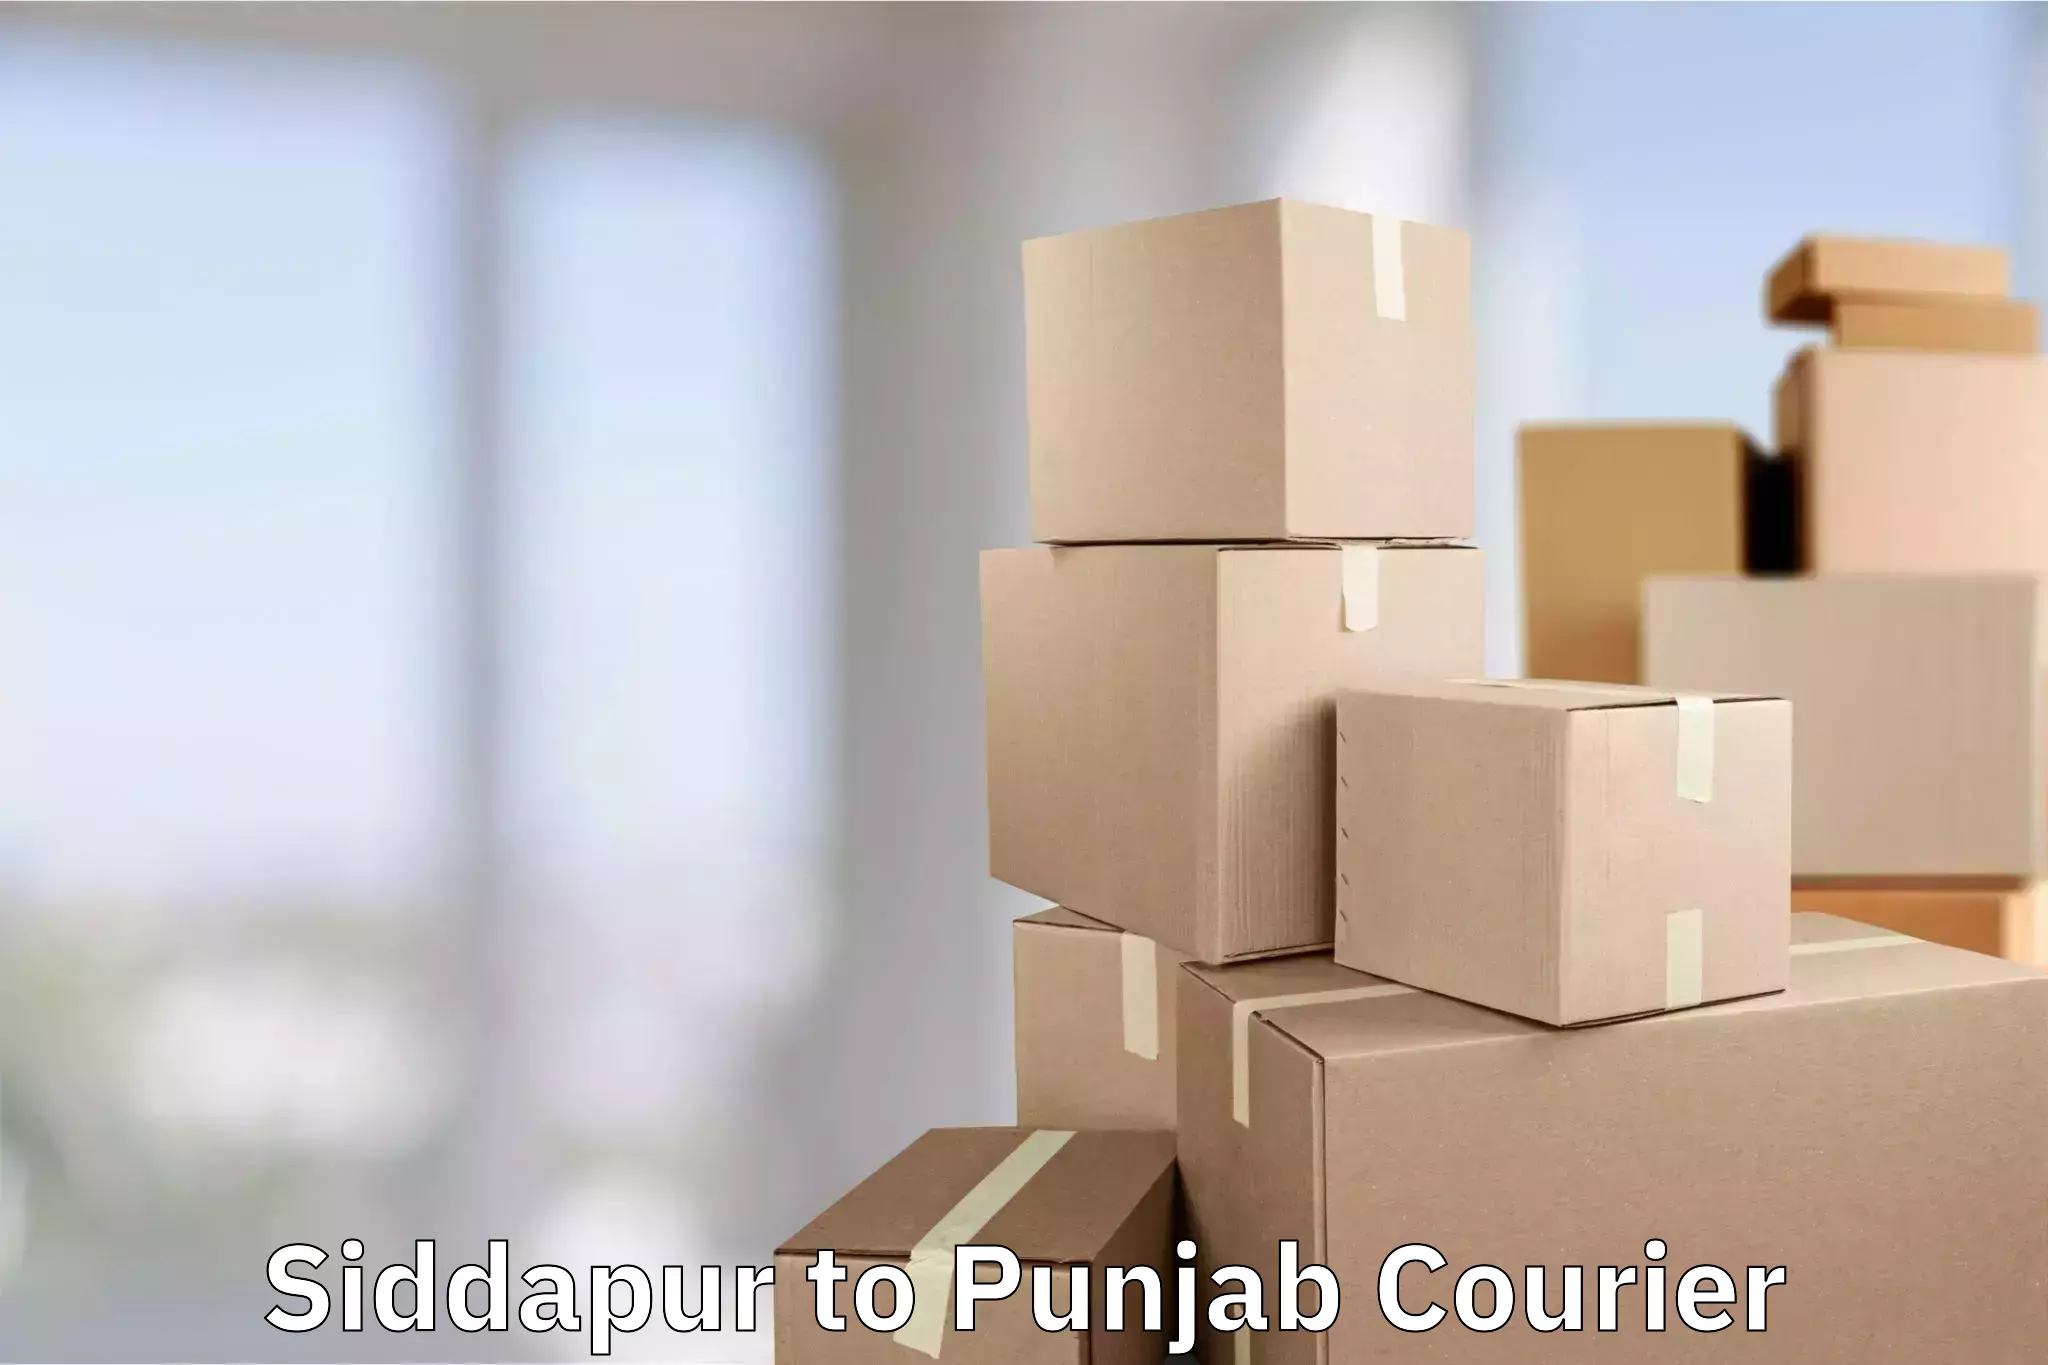 Baggage transport scheduler Siddapur to Punjab